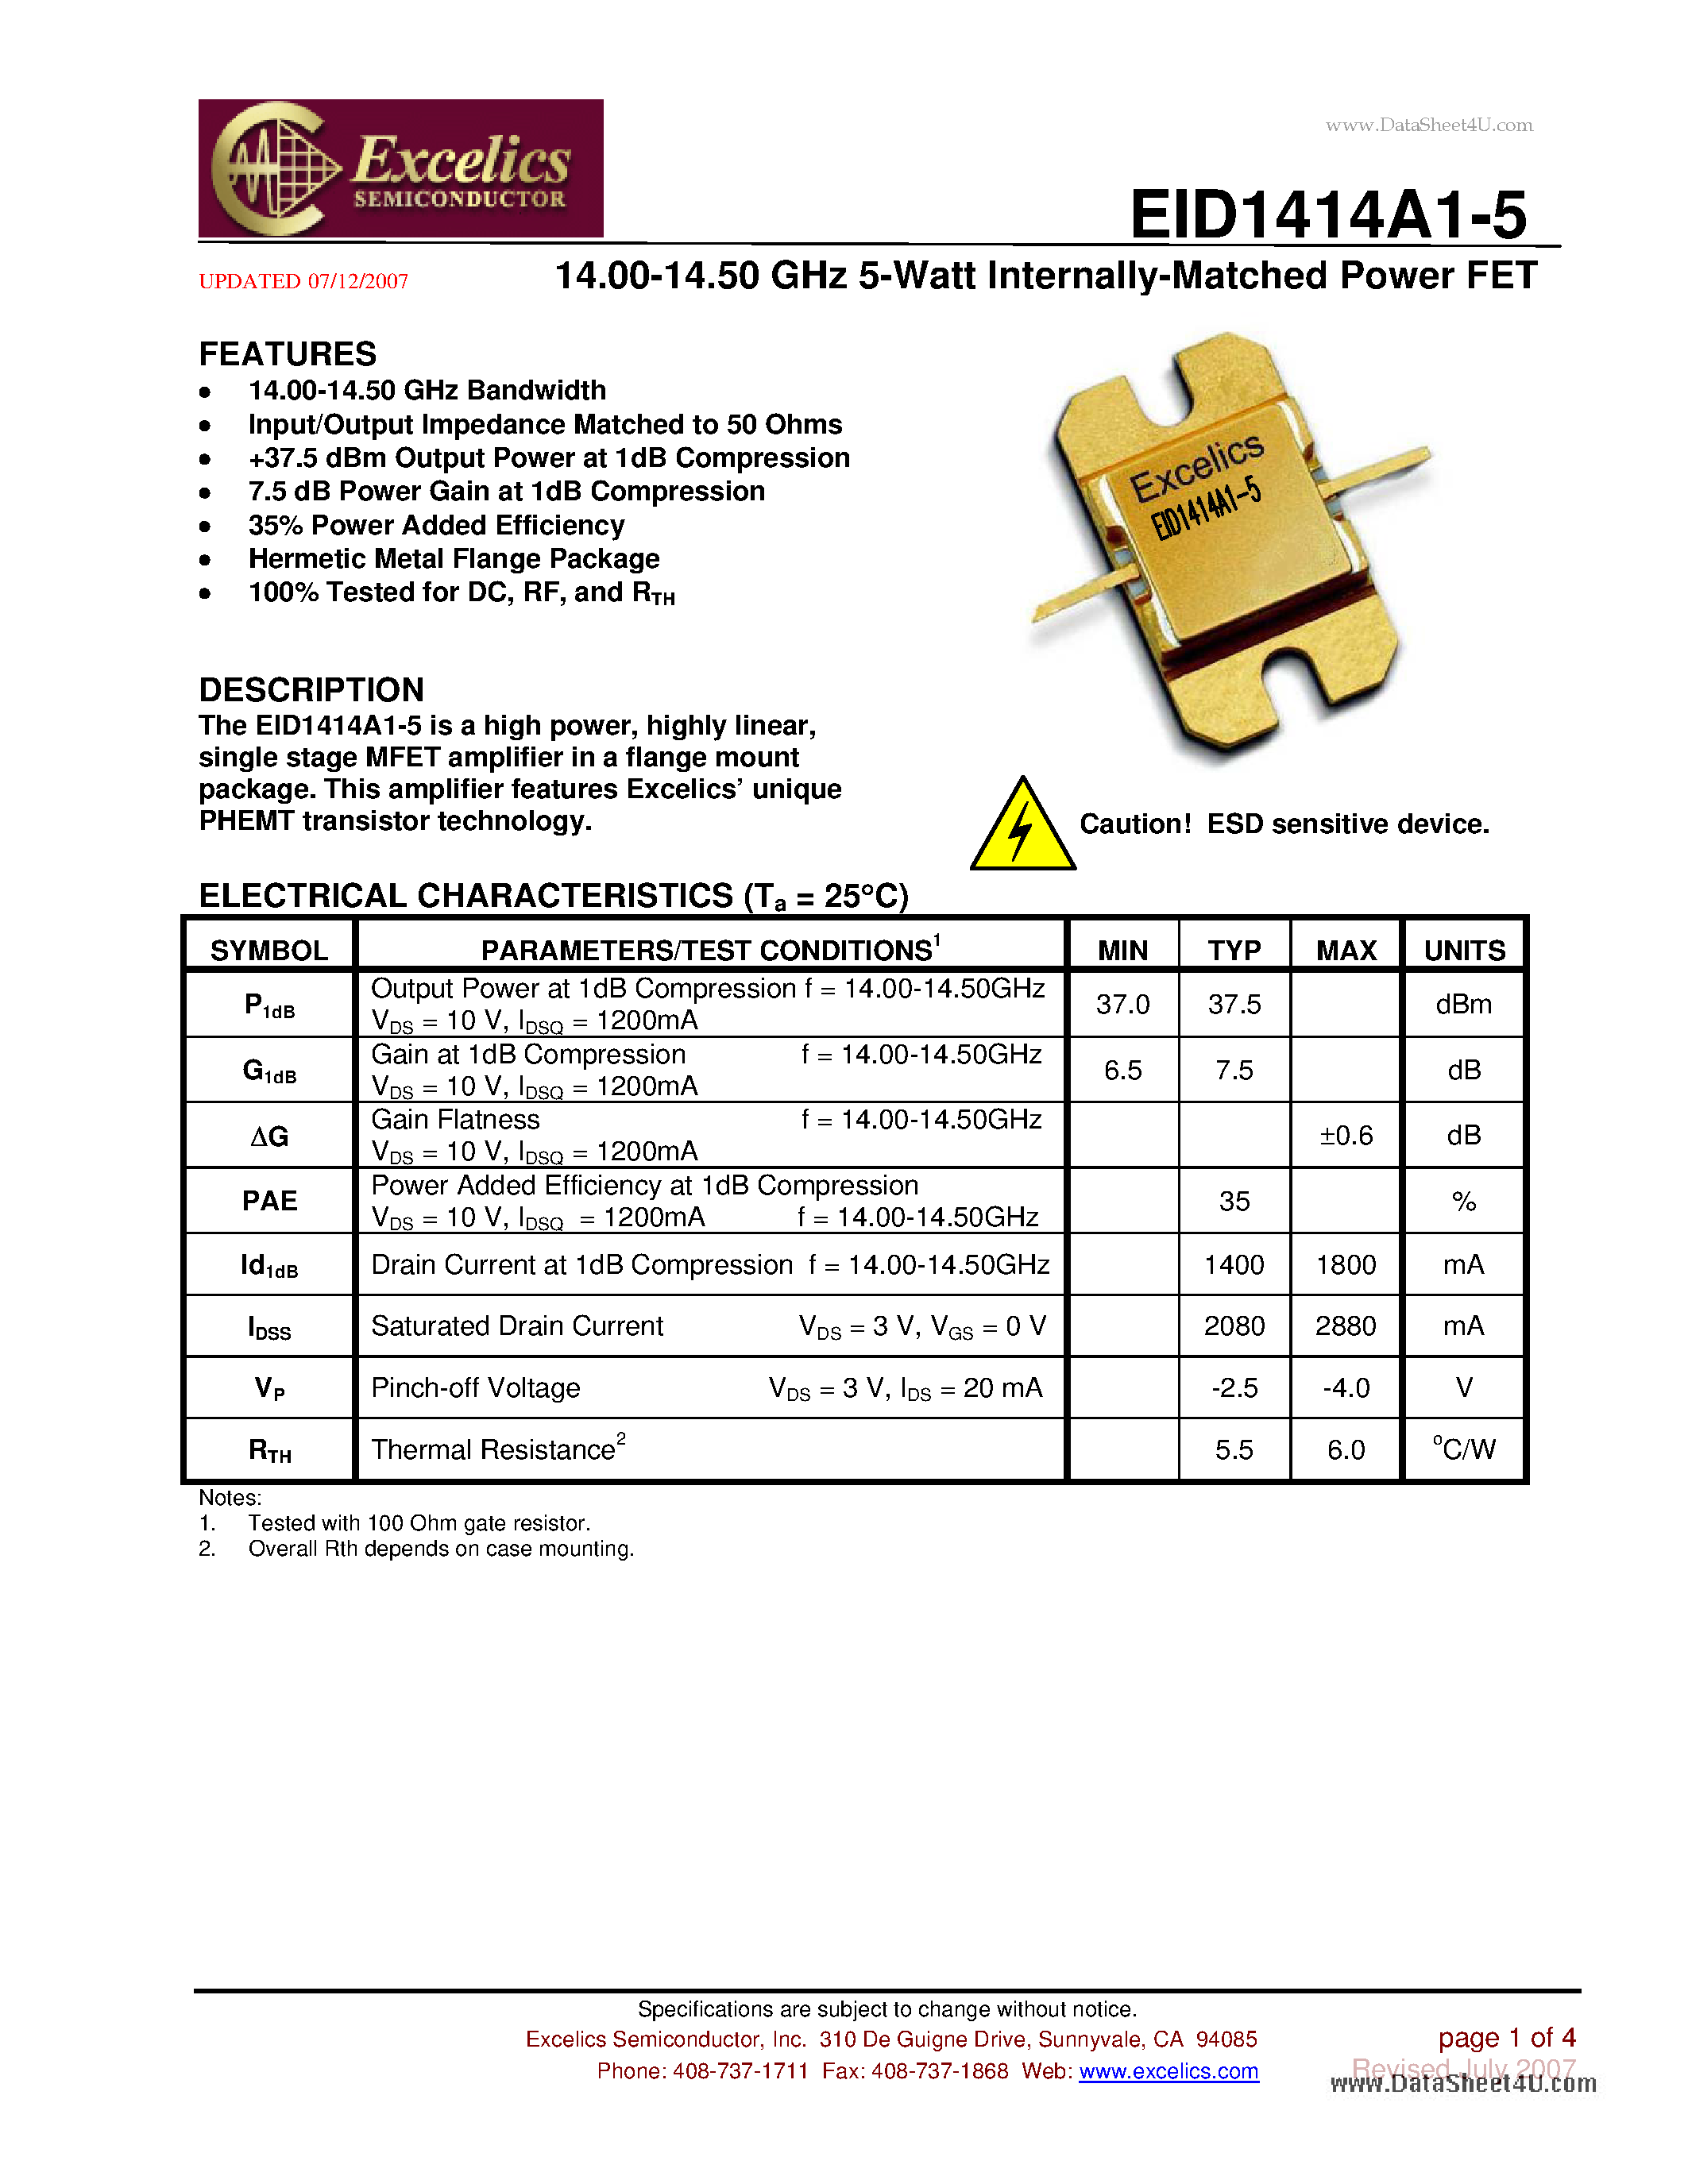 Даташит EID1414A1-5 - 14.00-14.50 GHz 5-Watt Internally-Matched Power FET страница 1